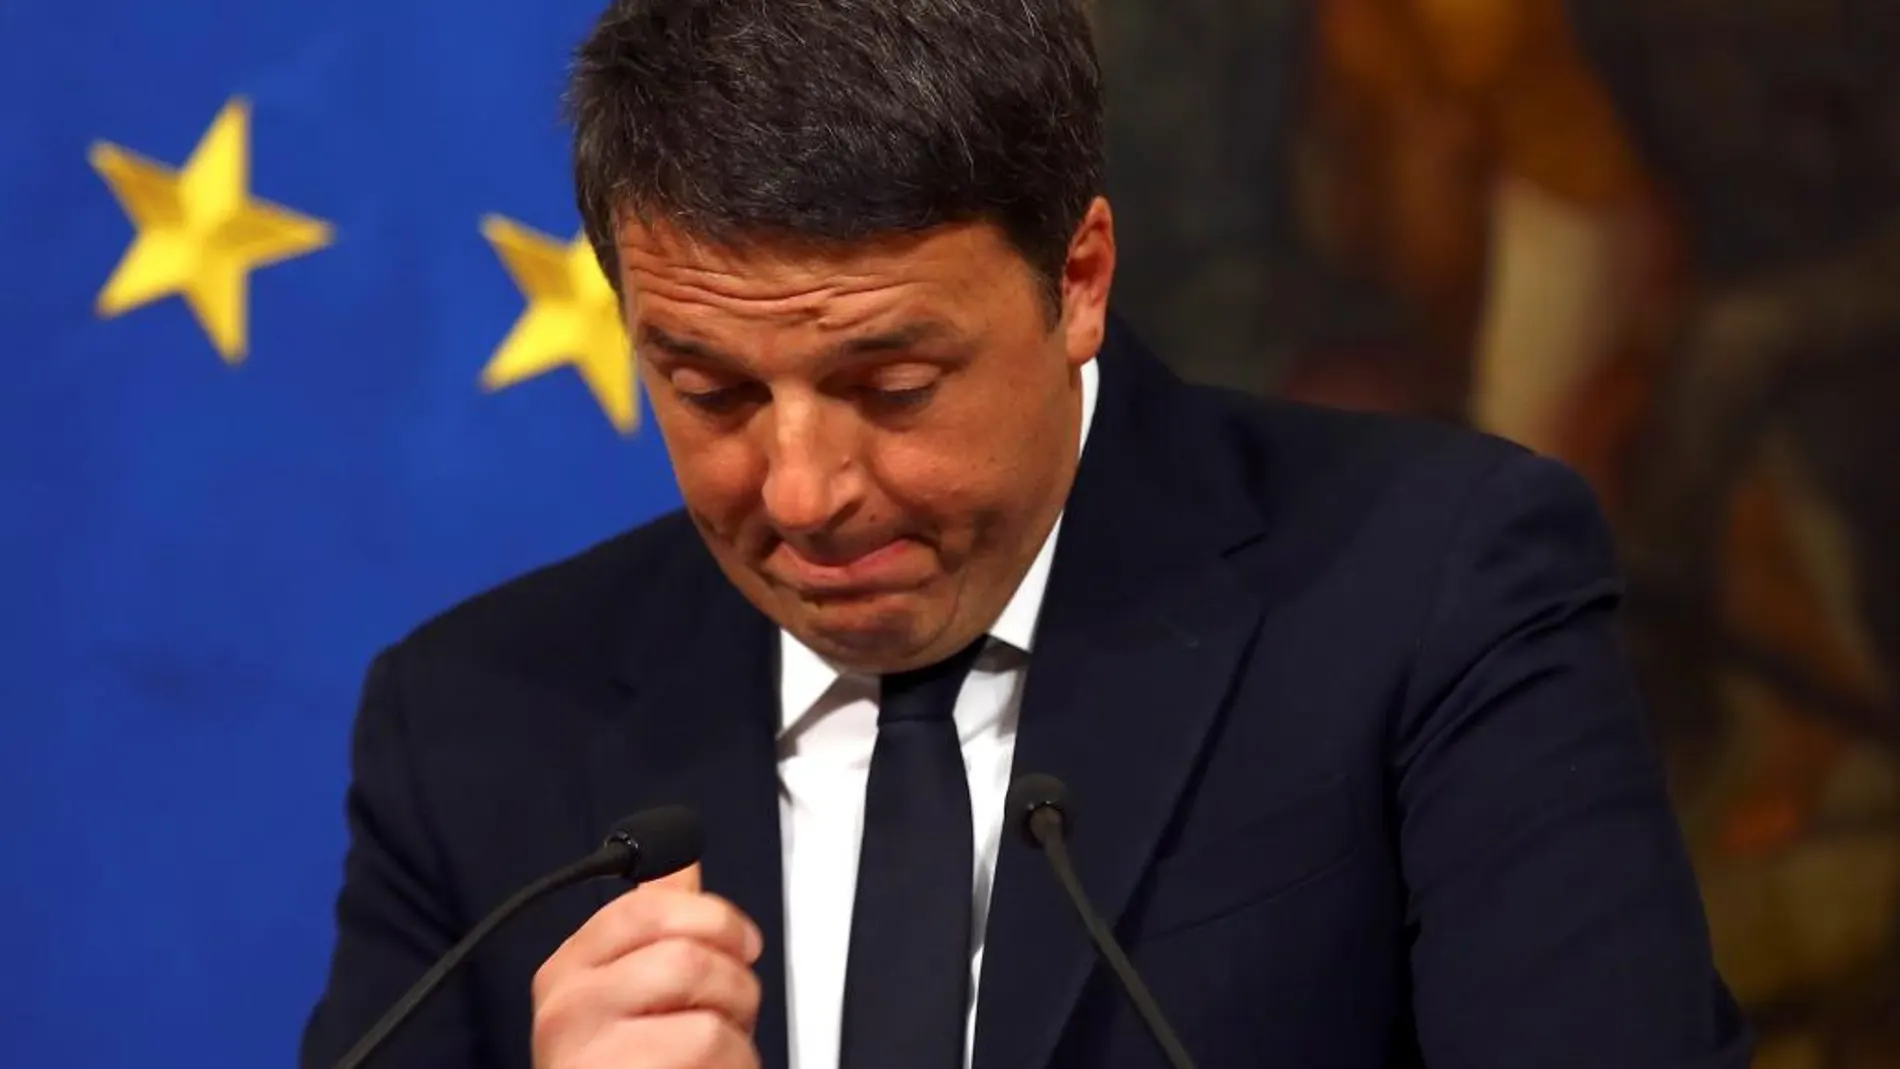 Matteo Renzi durante la comparecencia esta noche en la que anunciado su dimisión